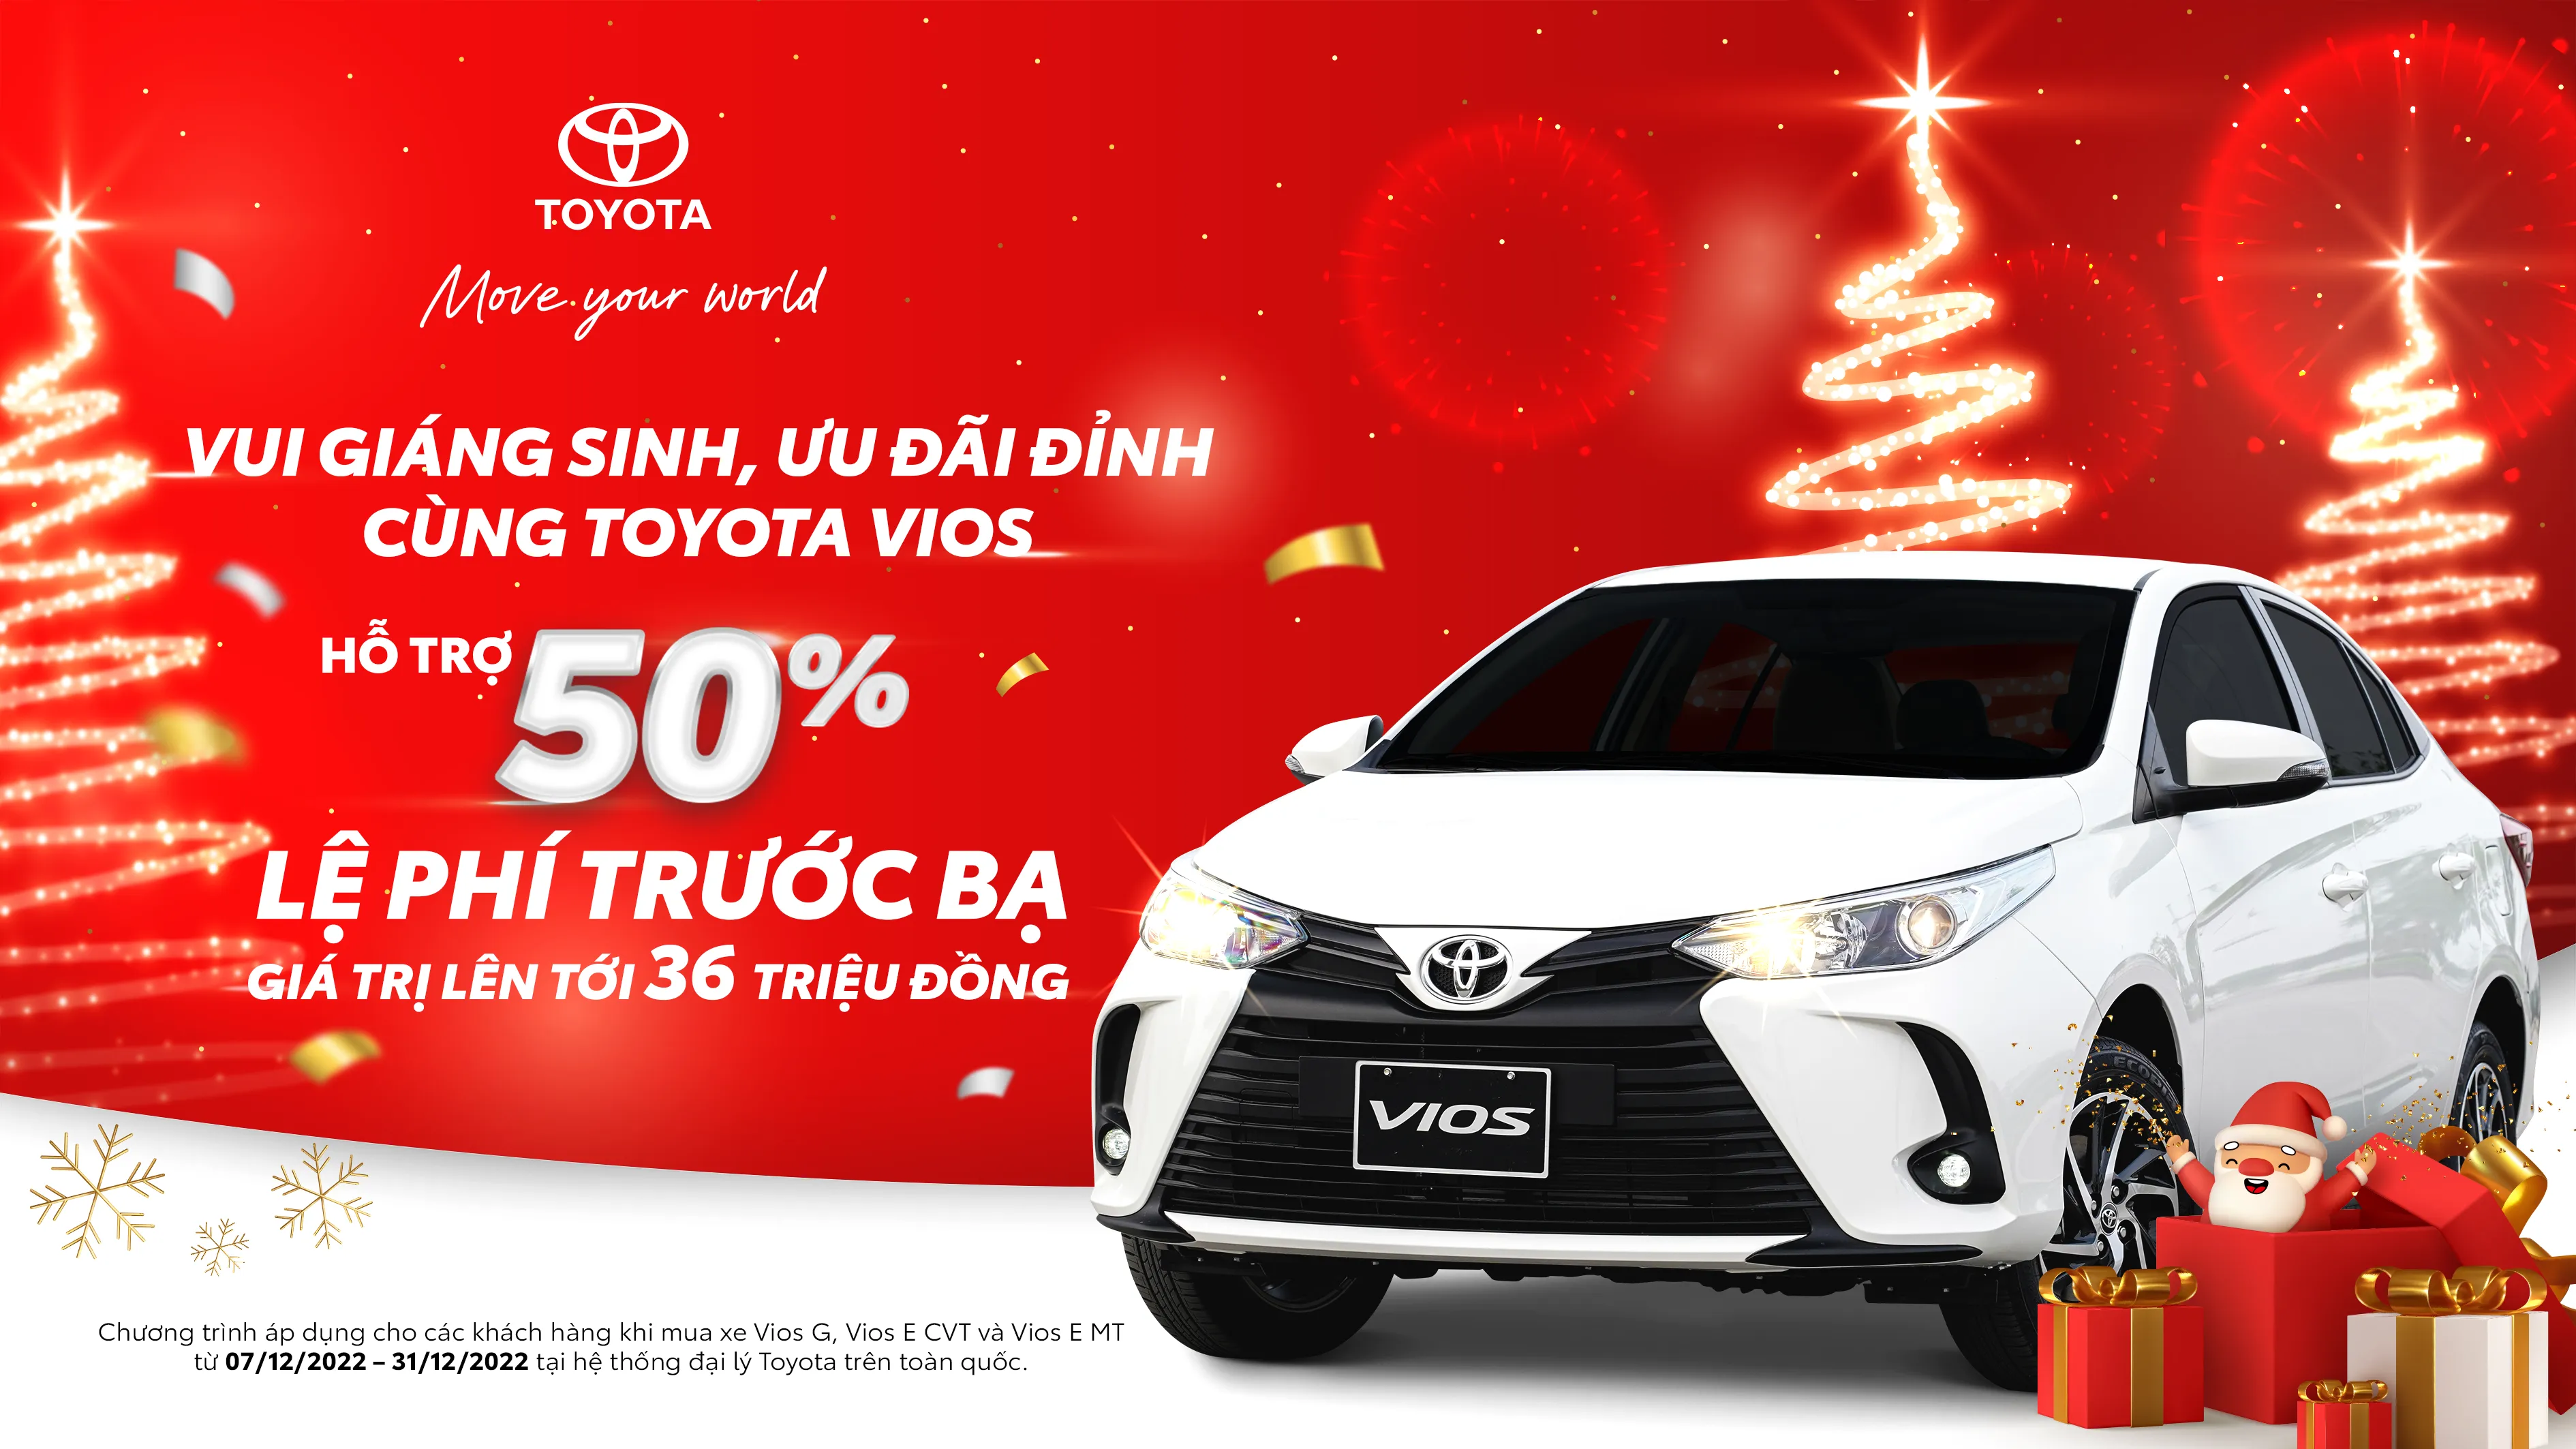 “Vui giáng sinh, ưu đãi đỉnh cùng Toyota Vios”